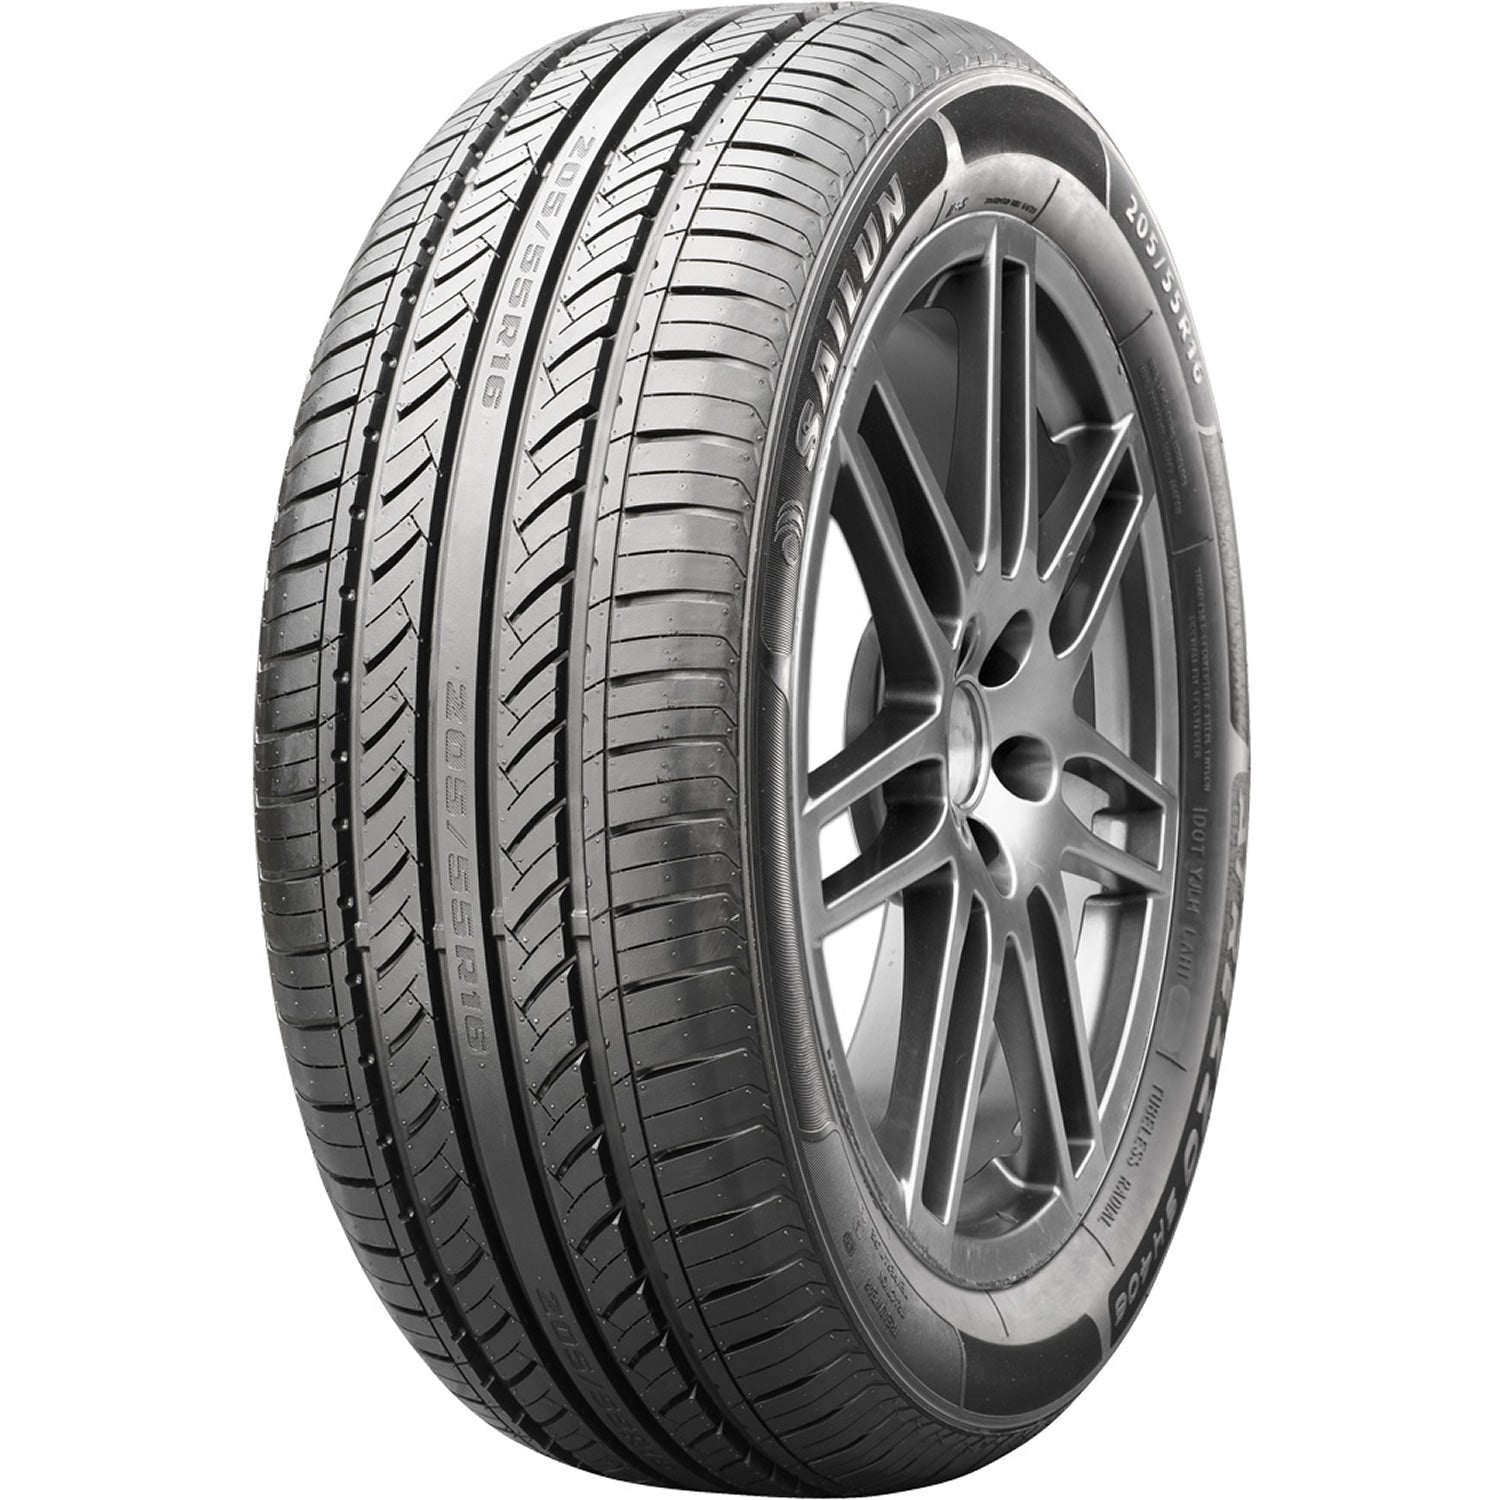 SAILUN ATREZZO SH406 205/60R15 (24.7X8.2R 15) Tires